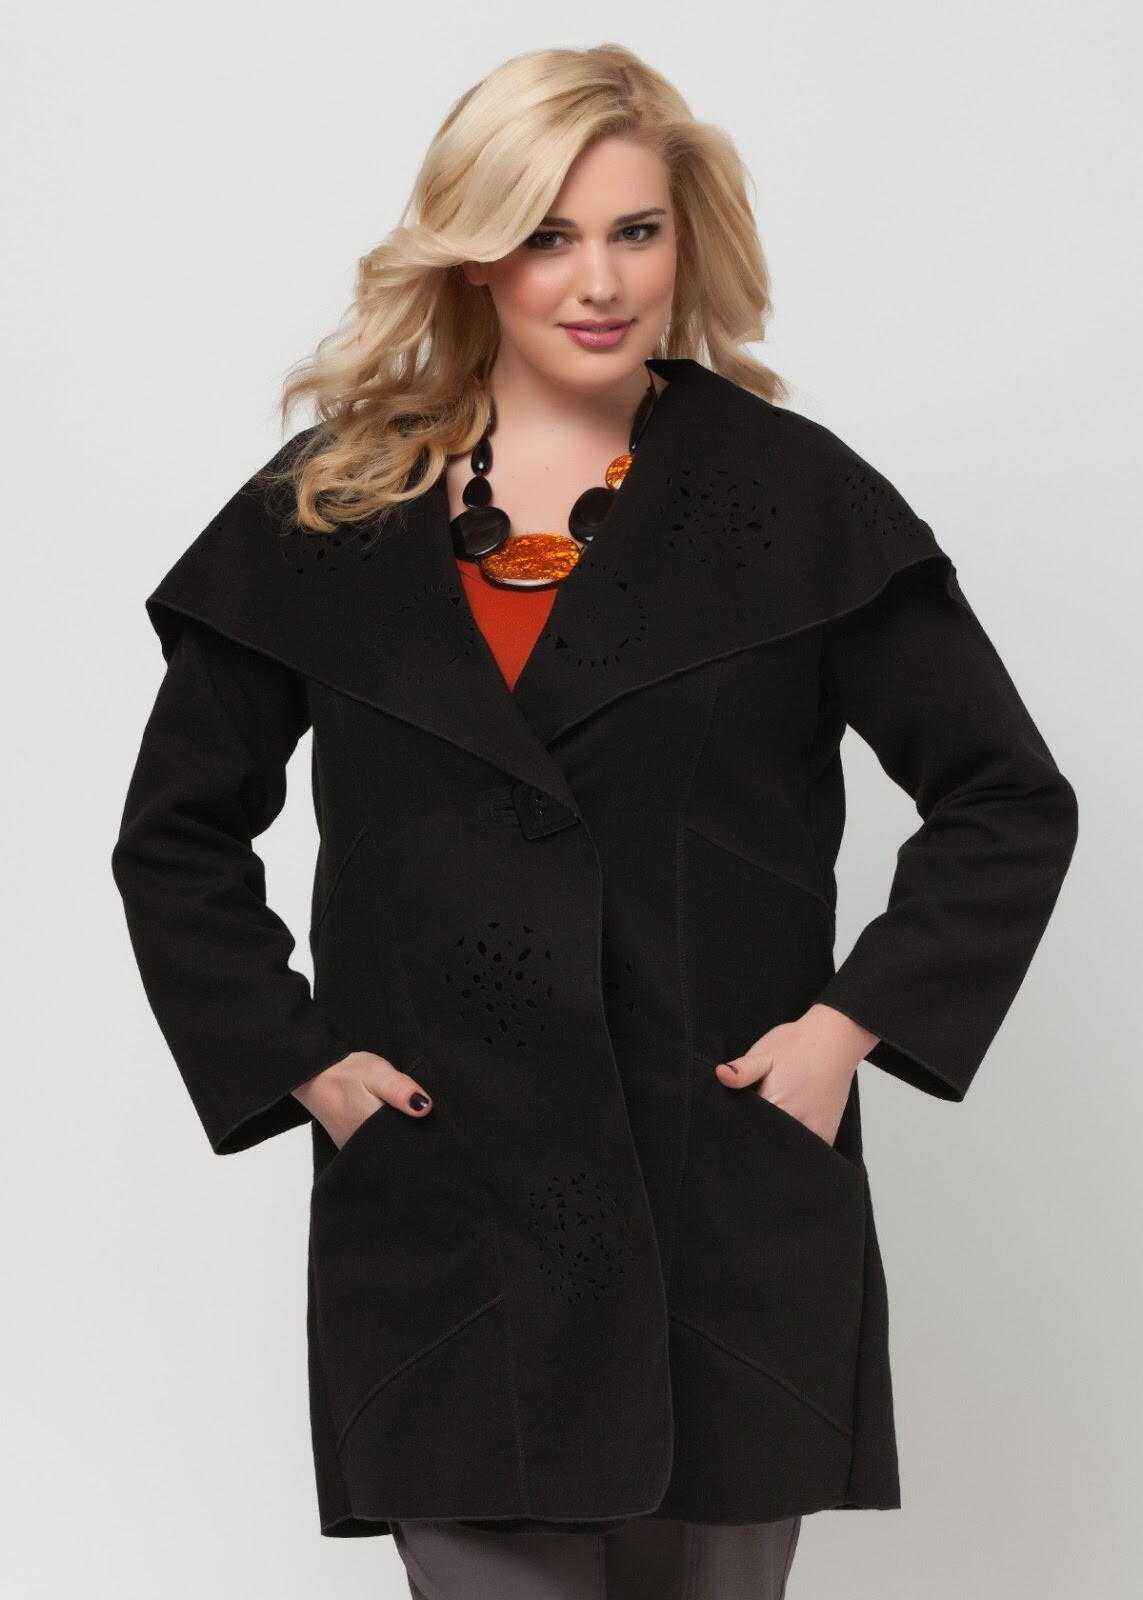 Пальто больших размеров для женщин